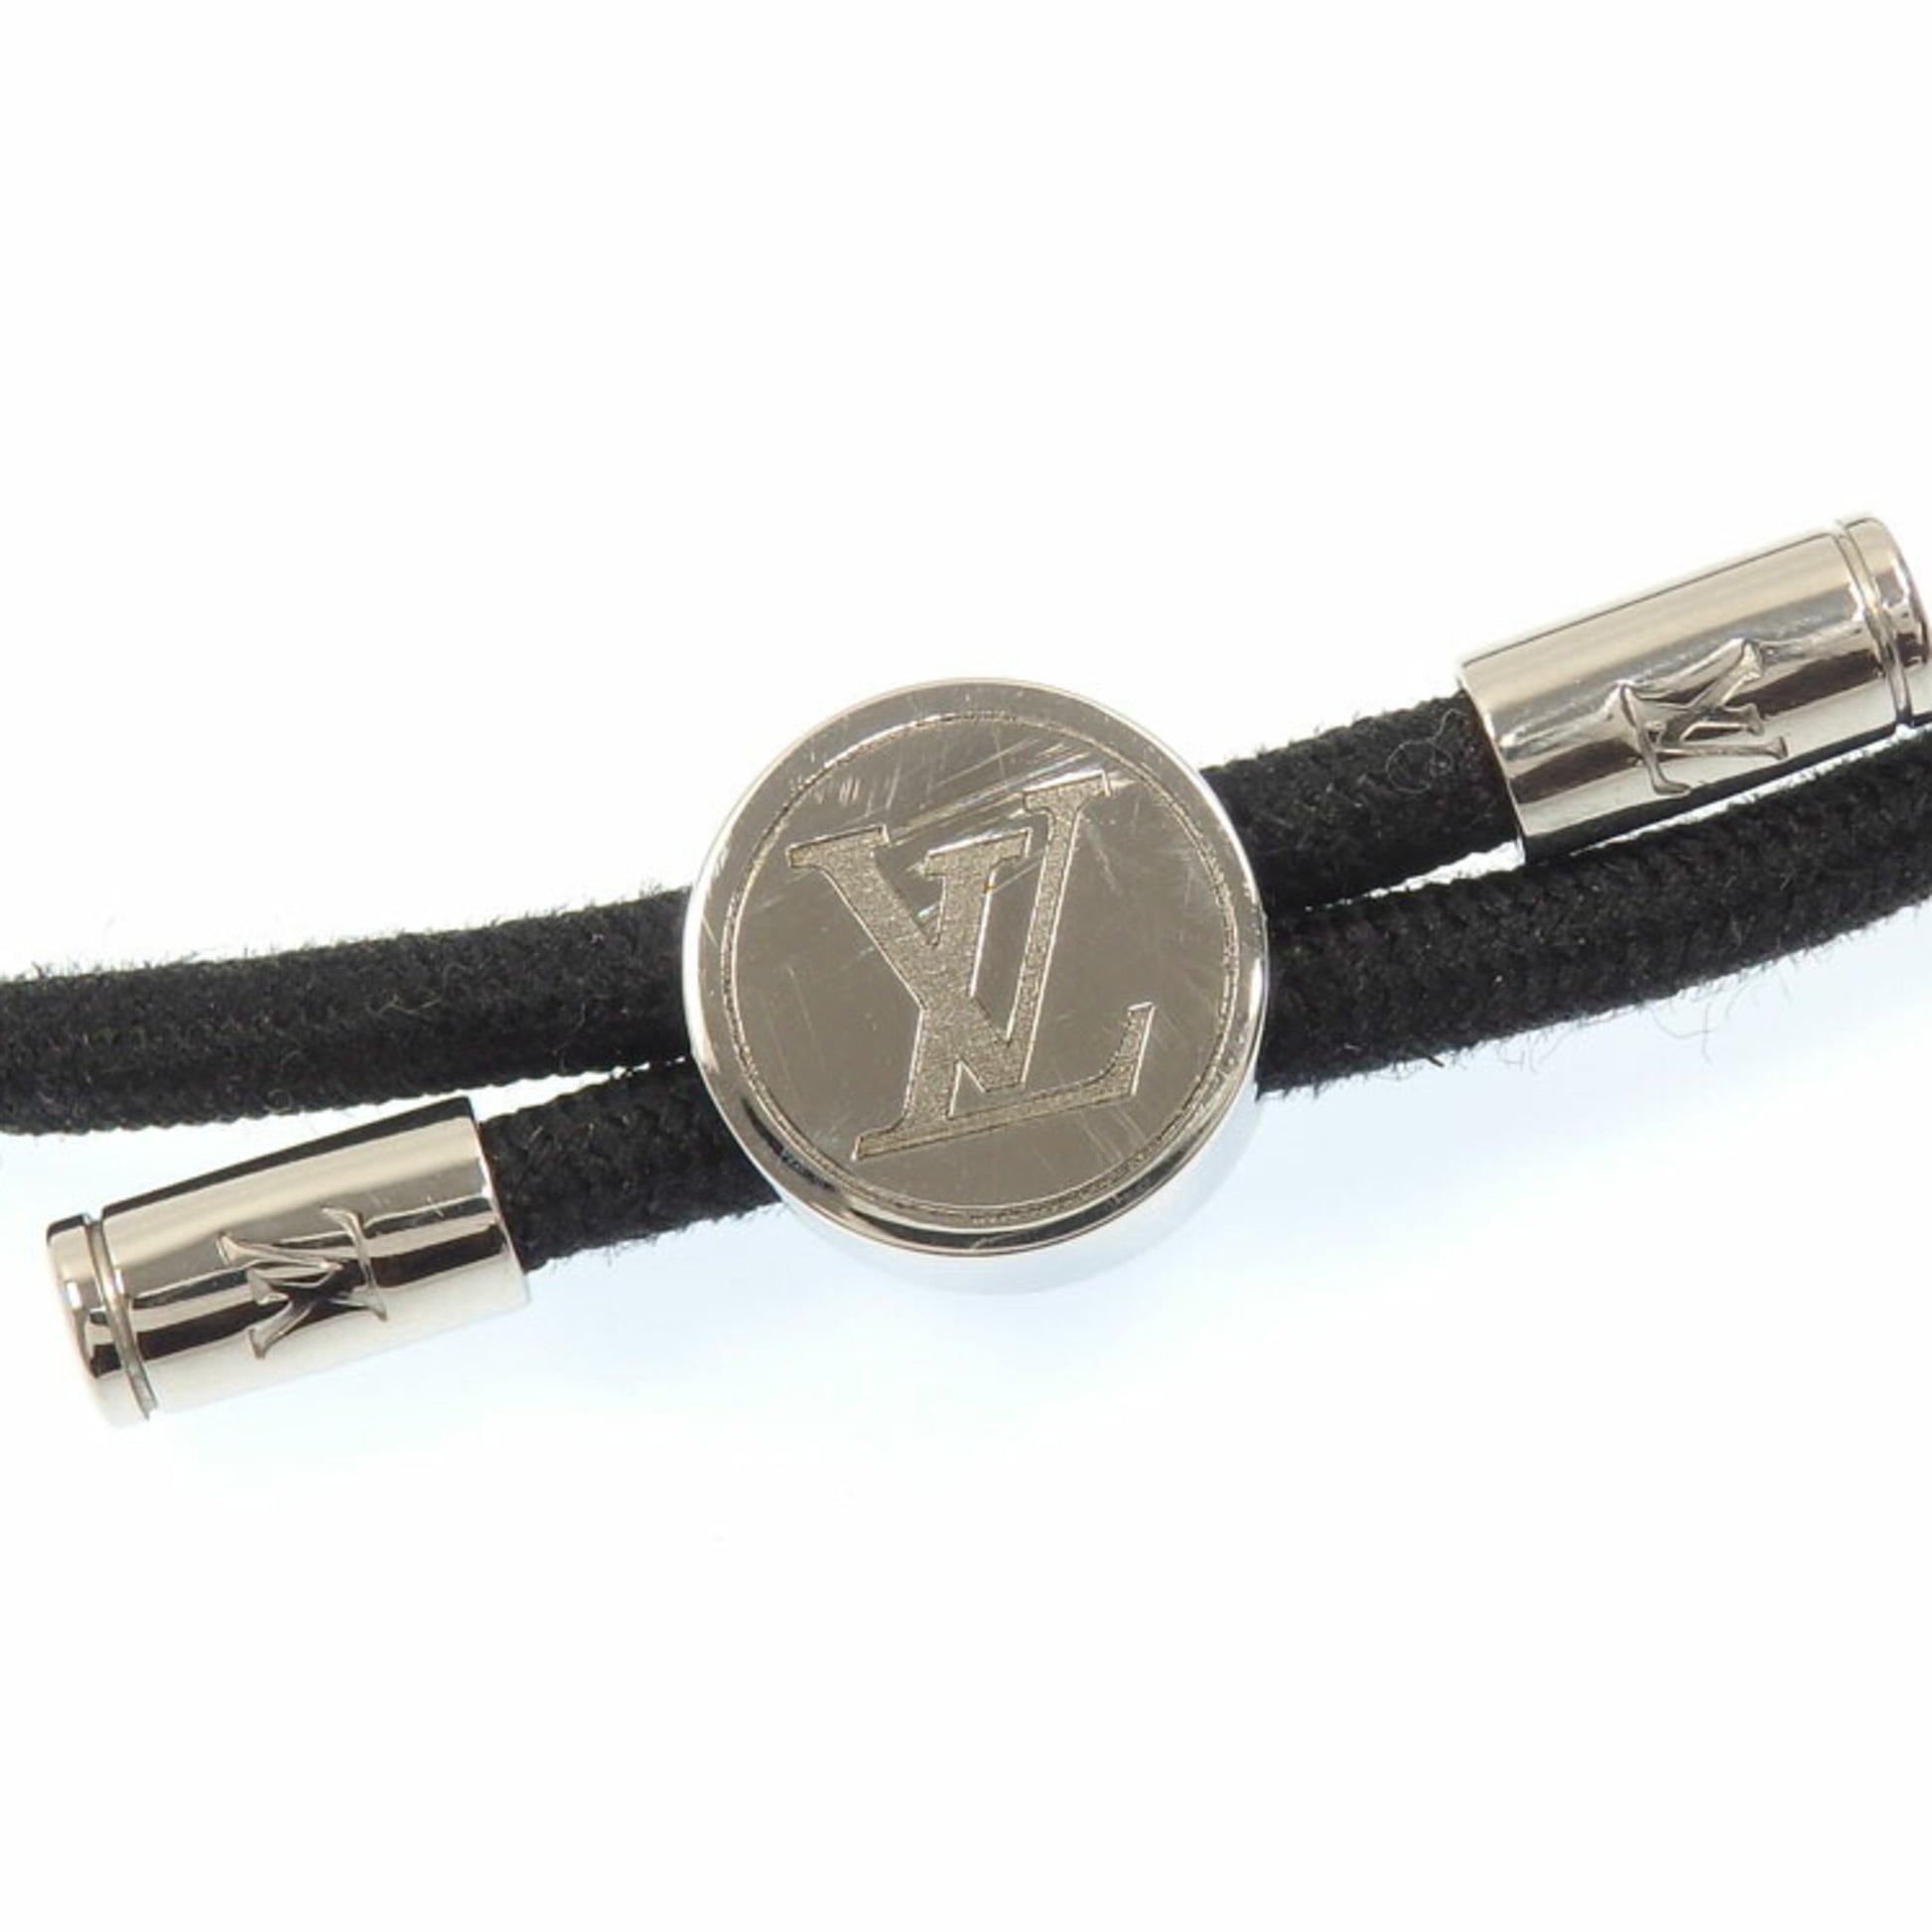 LV Space Bracelet S00 - Fashion Jewelry M00273